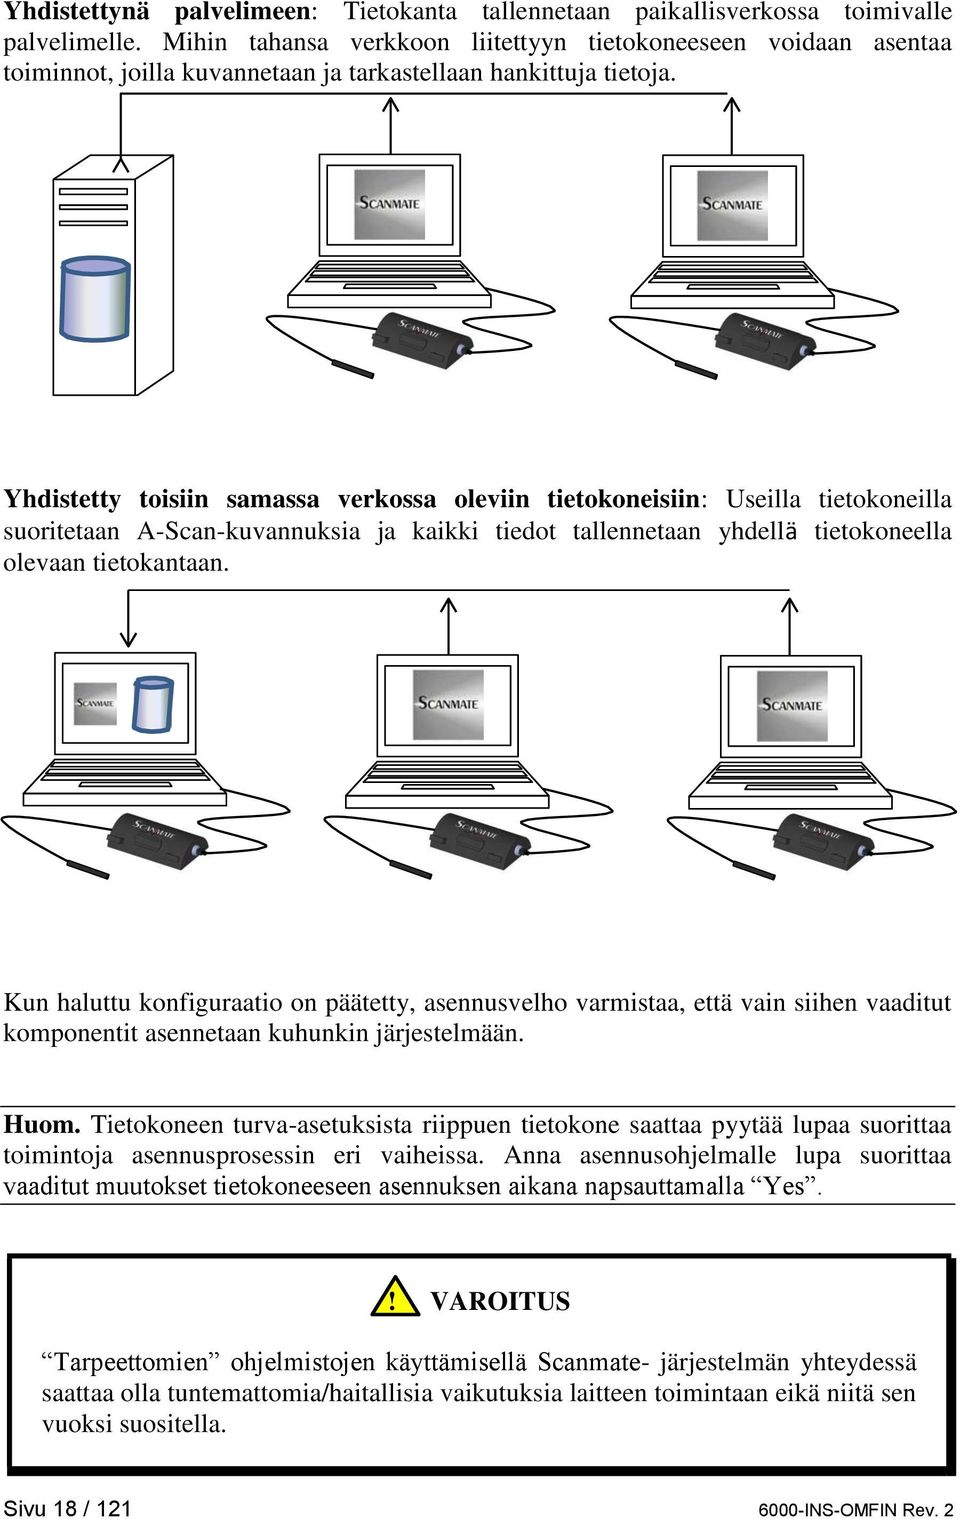 Yhdistetty toisiin samassa verkossa oleviin tietokoneisiin: Useilla tietokoneilla suoritetaan A-Scan-kuvannuksia ja kaikki tiedot tallennetaan yhdellä tietokoneella olevaan tietokantaan.